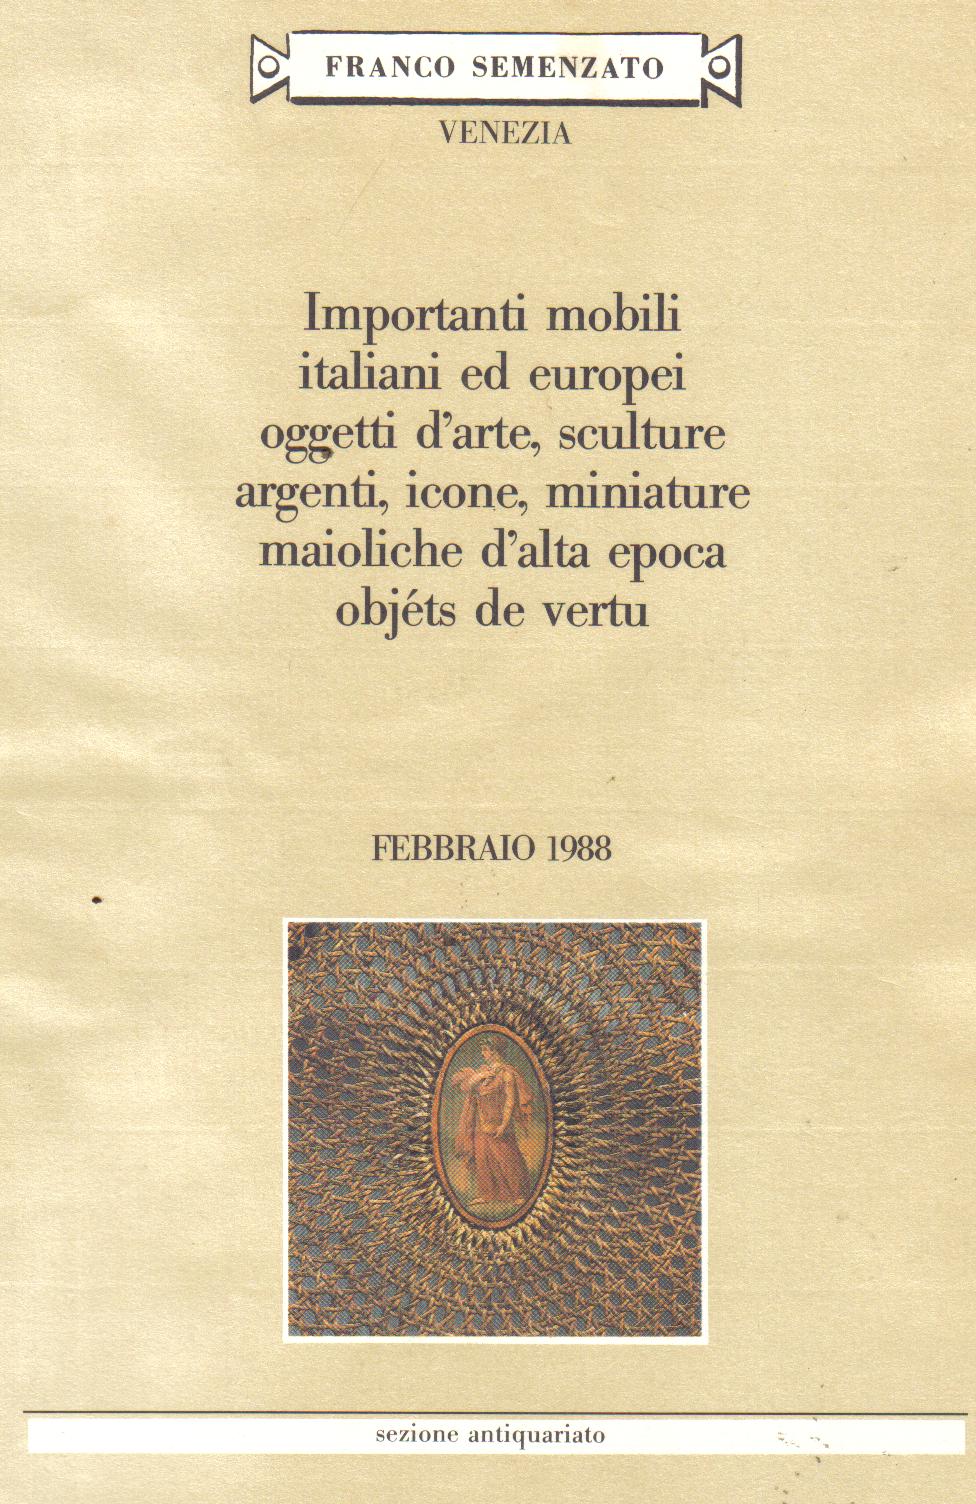 Importi mobili italiani ed europi oggetti dÃ¡rte, sculture,argenti mimiature maiolichedÃ¡lta epocaobjets der vertufebbraio 19881020